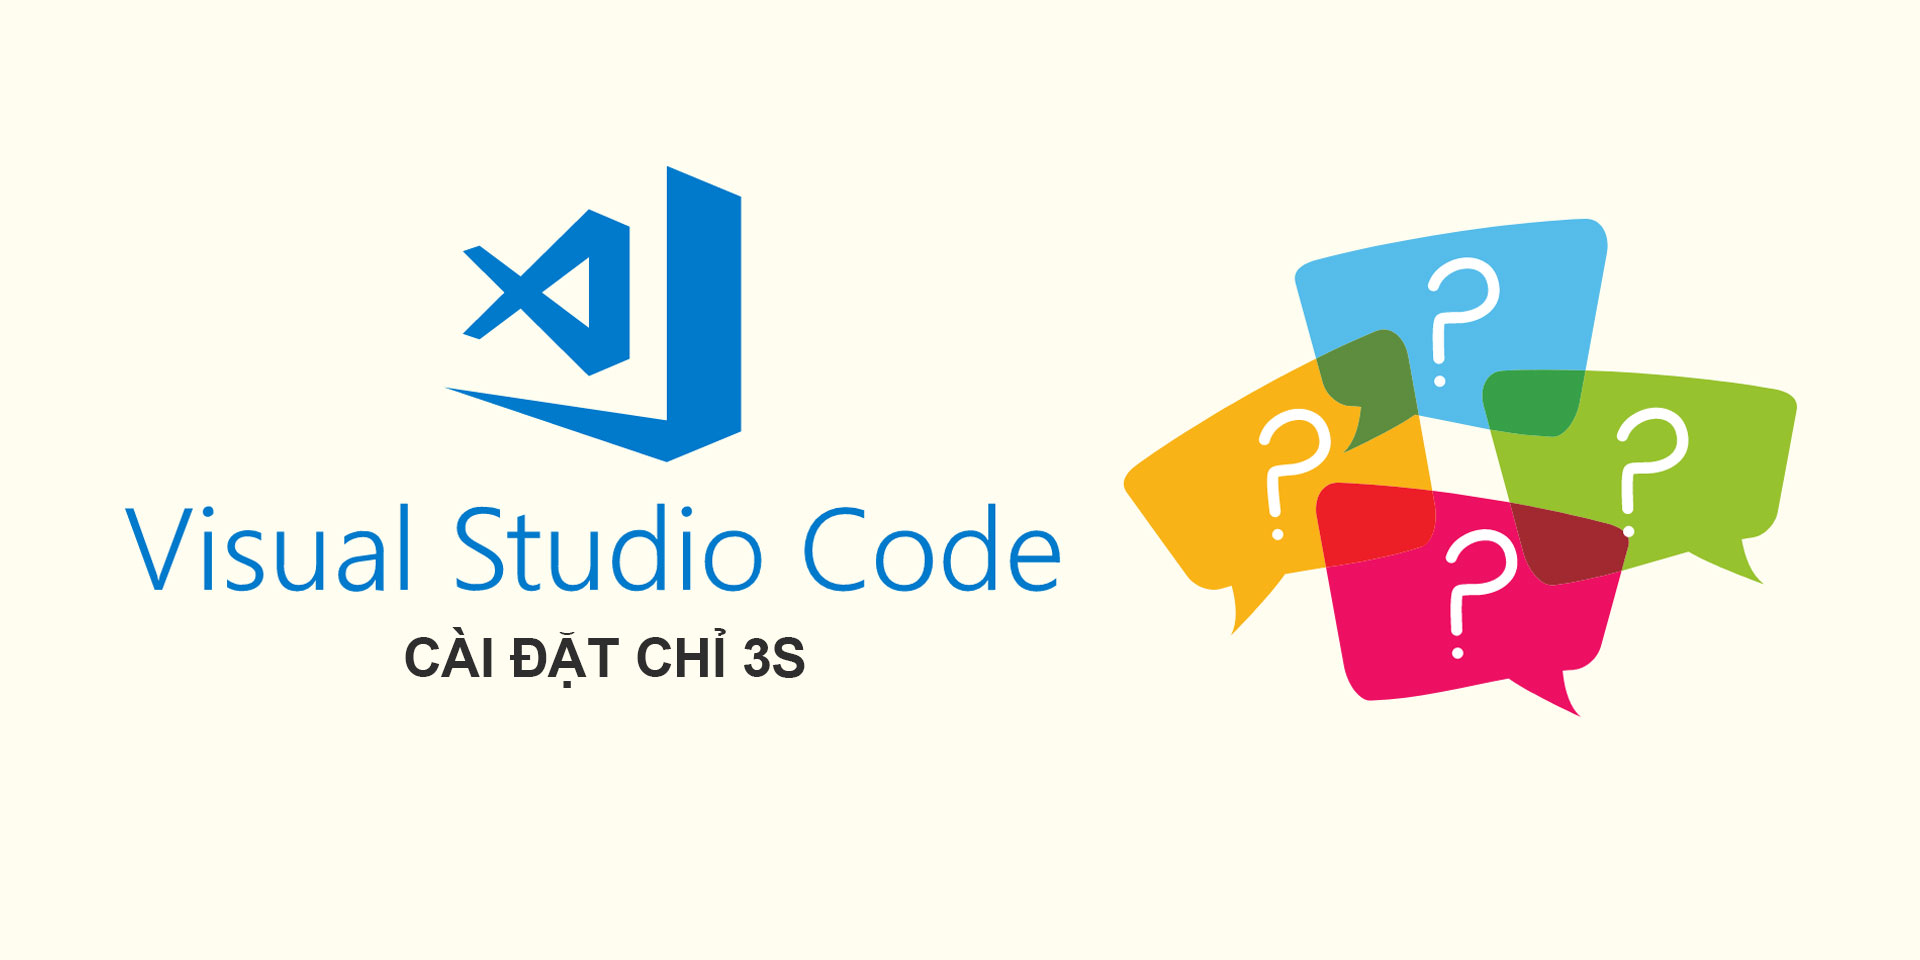 Hướng Dẫn Cài Đặt Visual Studio Code mới nhất